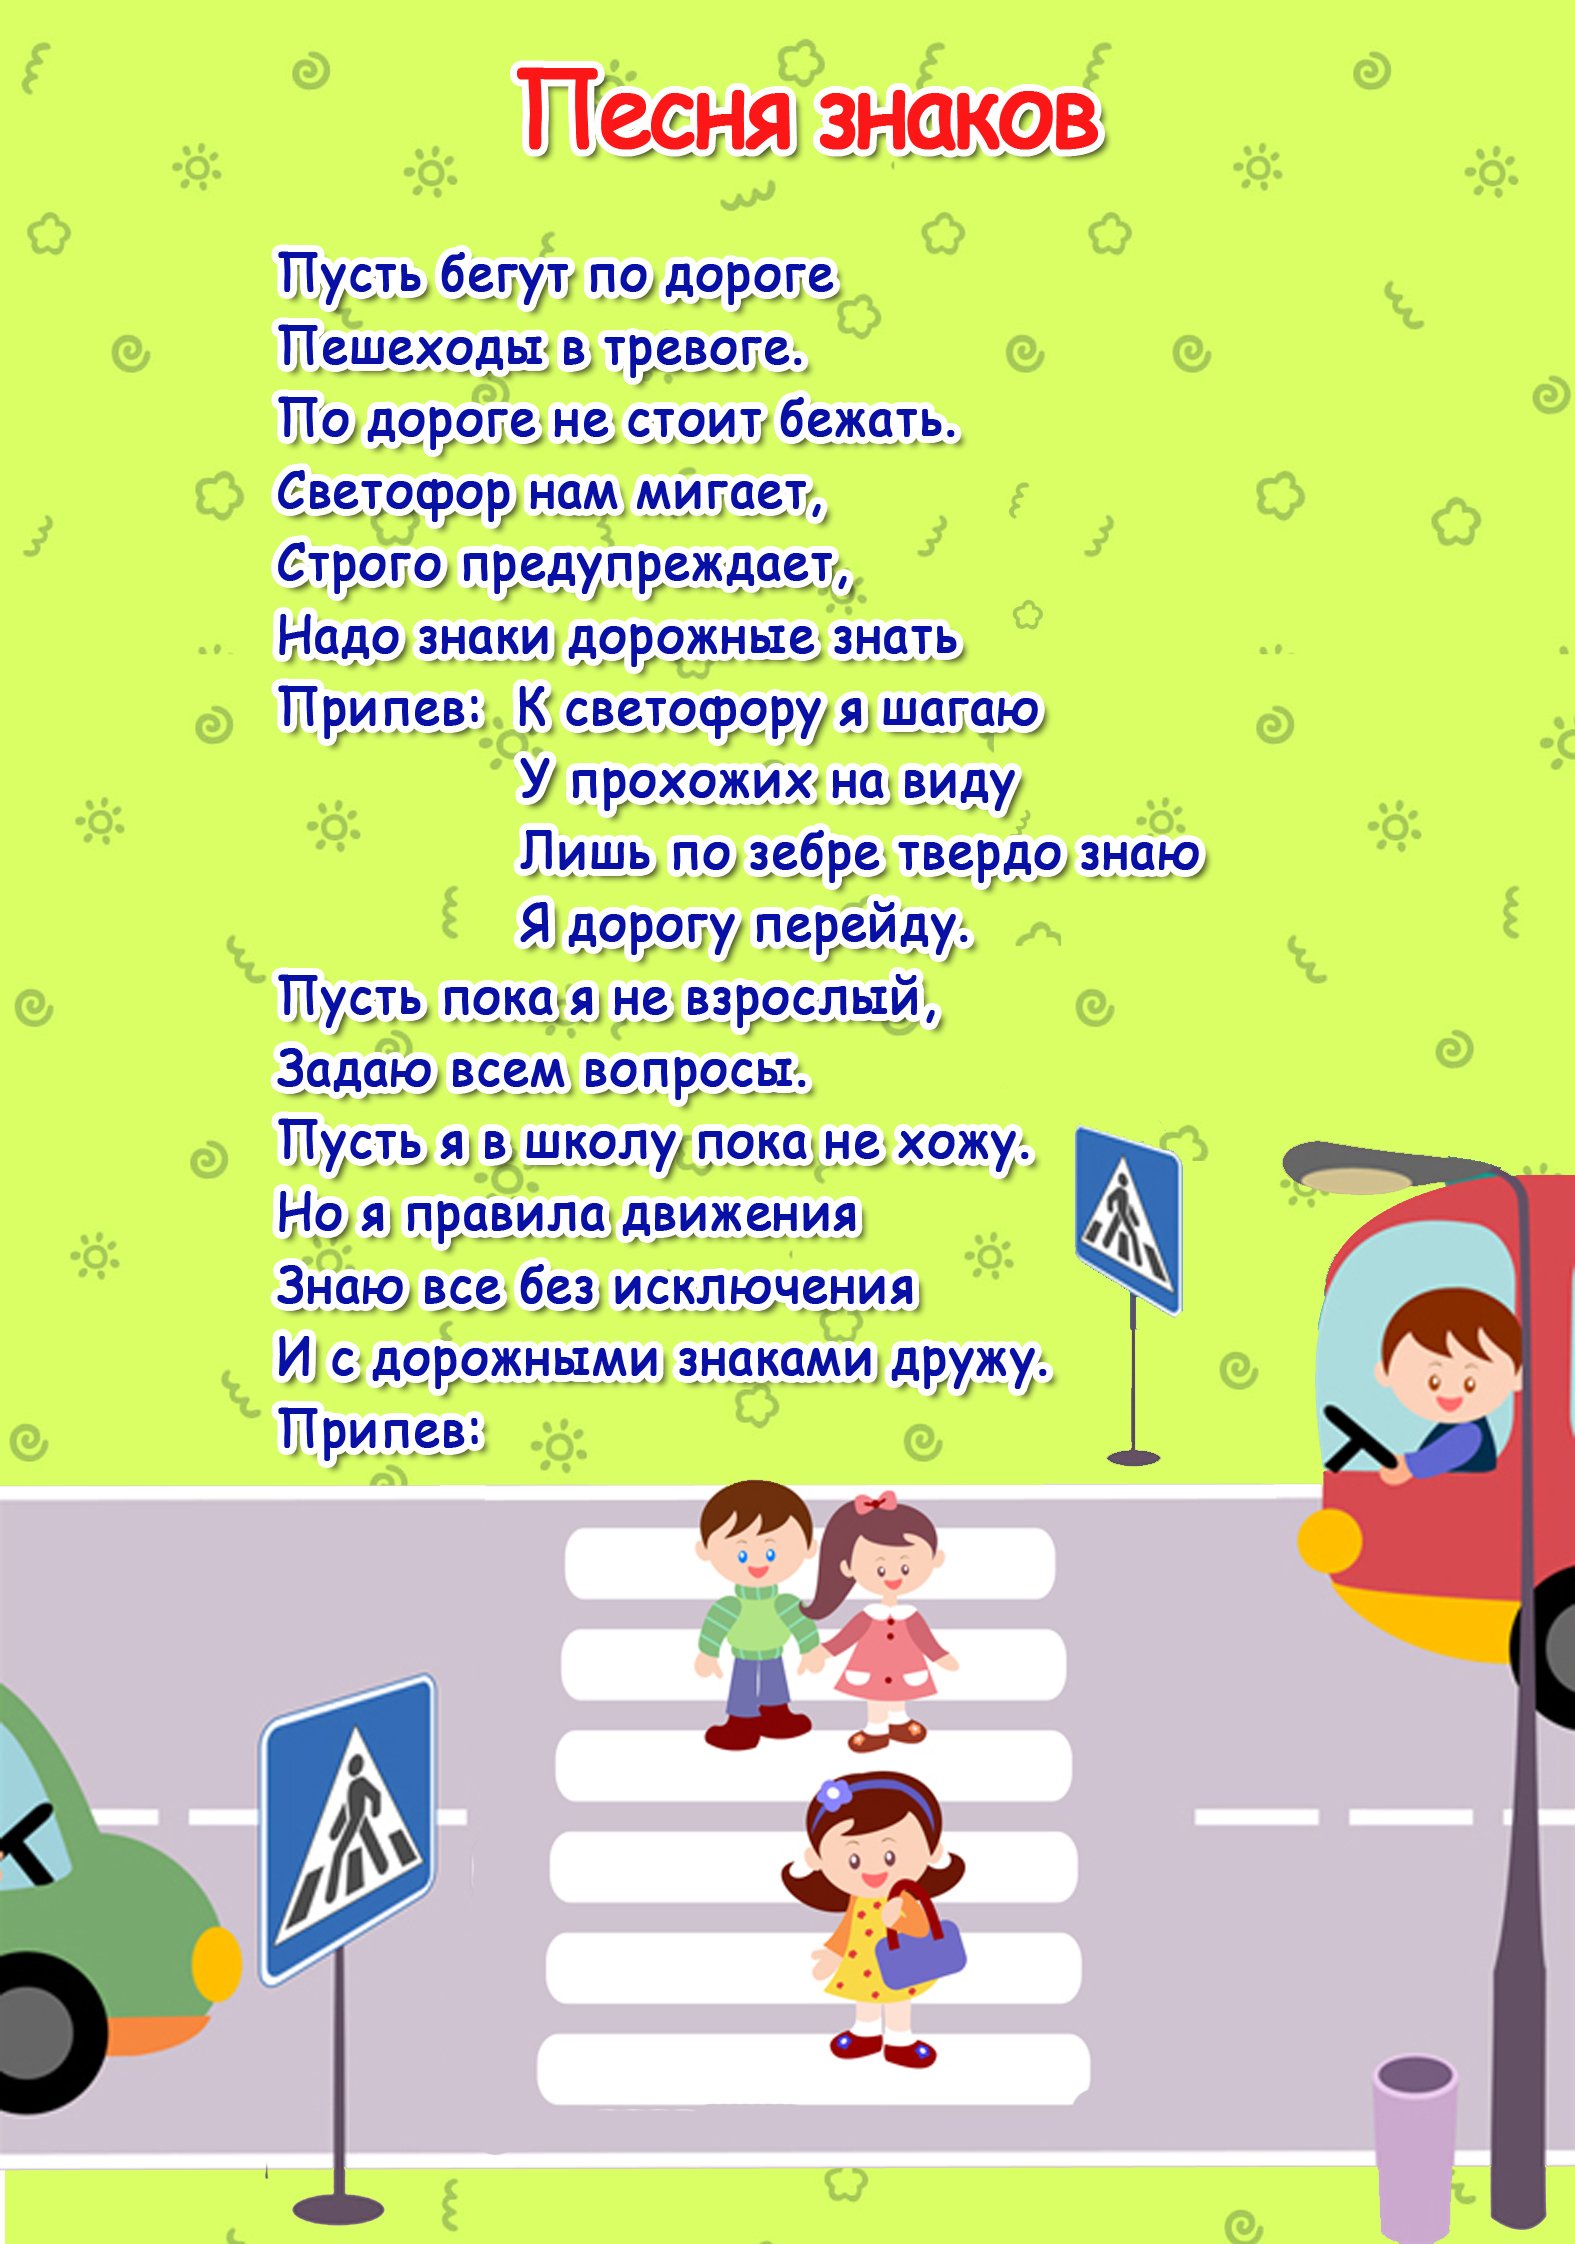 Слова песни тревога. Стихи по правилам дорожного движения. ПДД для детей. Правила дорожного движения для детей. Стихи про ПДД для детей.